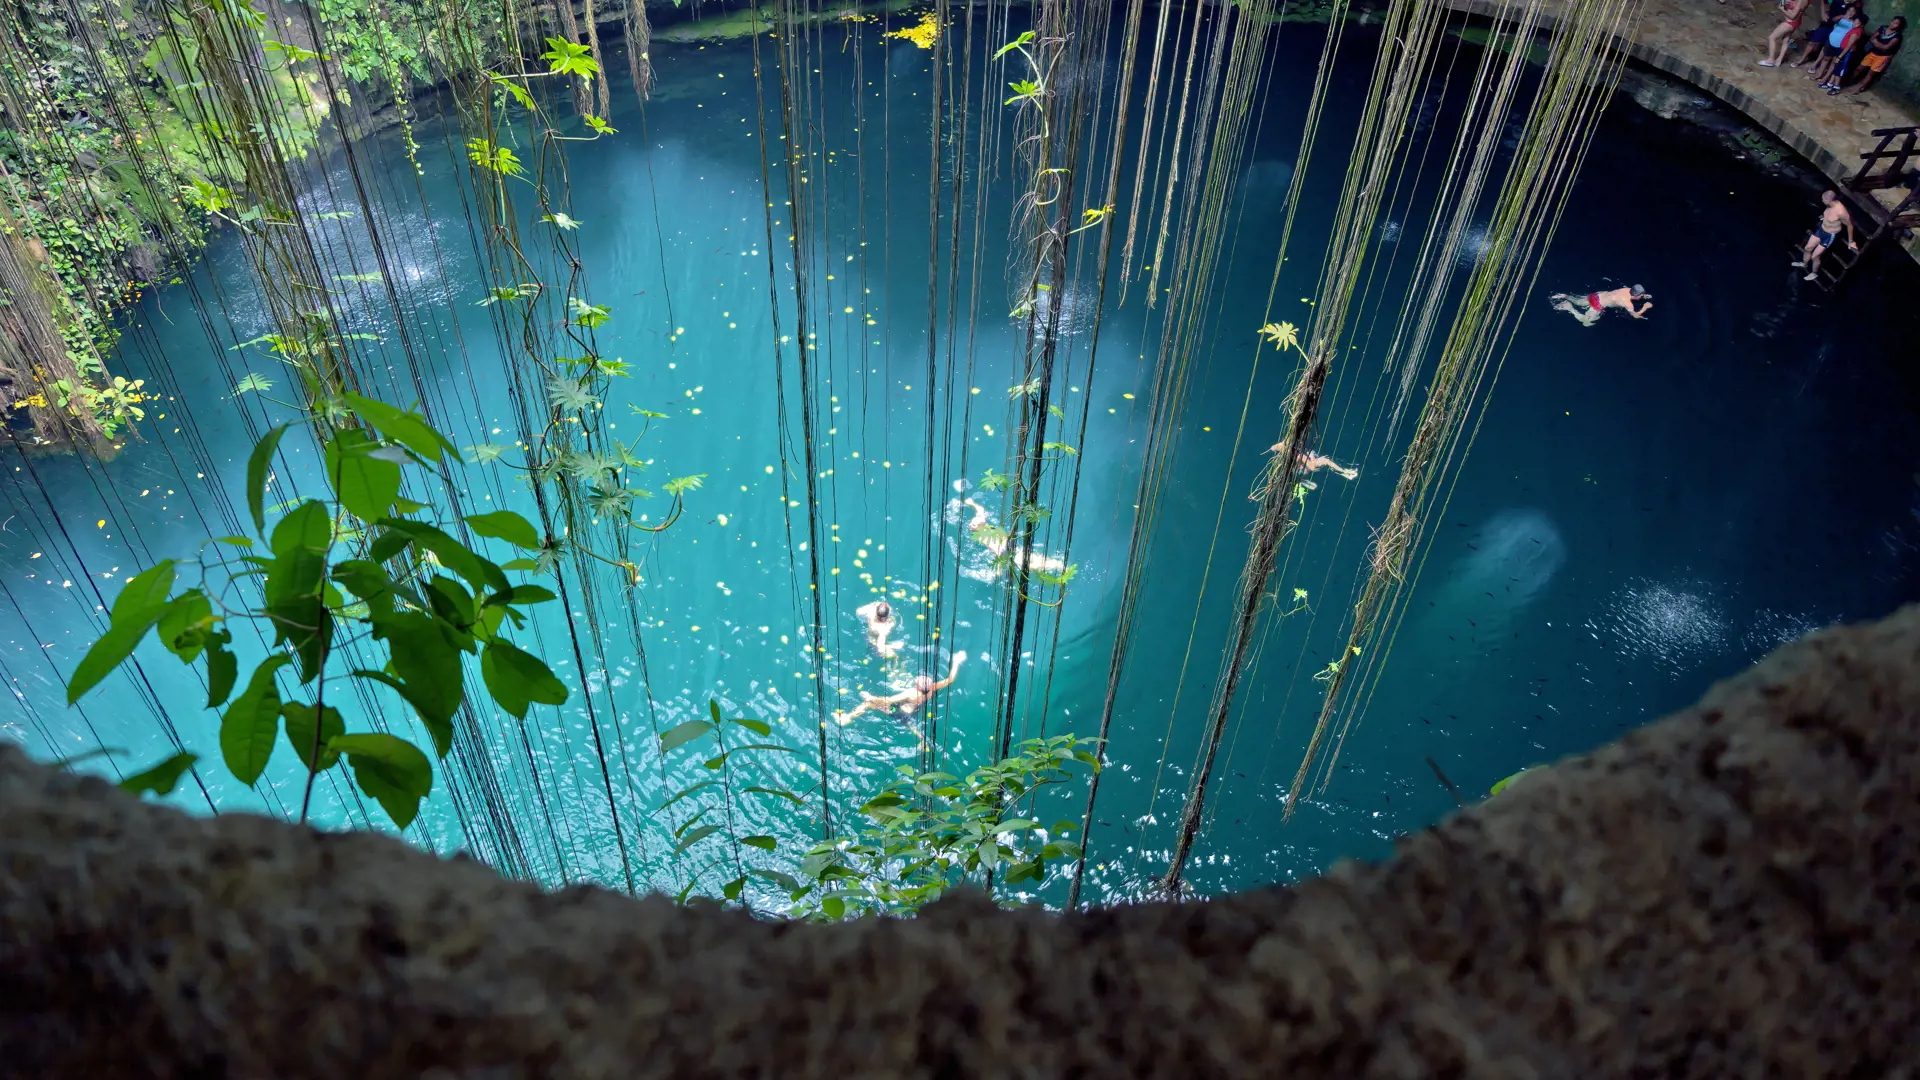 IK KIL - Yucatan-halvøen er reelt en stor kalkstensklippe med underjordiske floder og grotter med søer, hvor I kan bade under lianer og drypsten som her i Ik Kil ved Chichén Itza